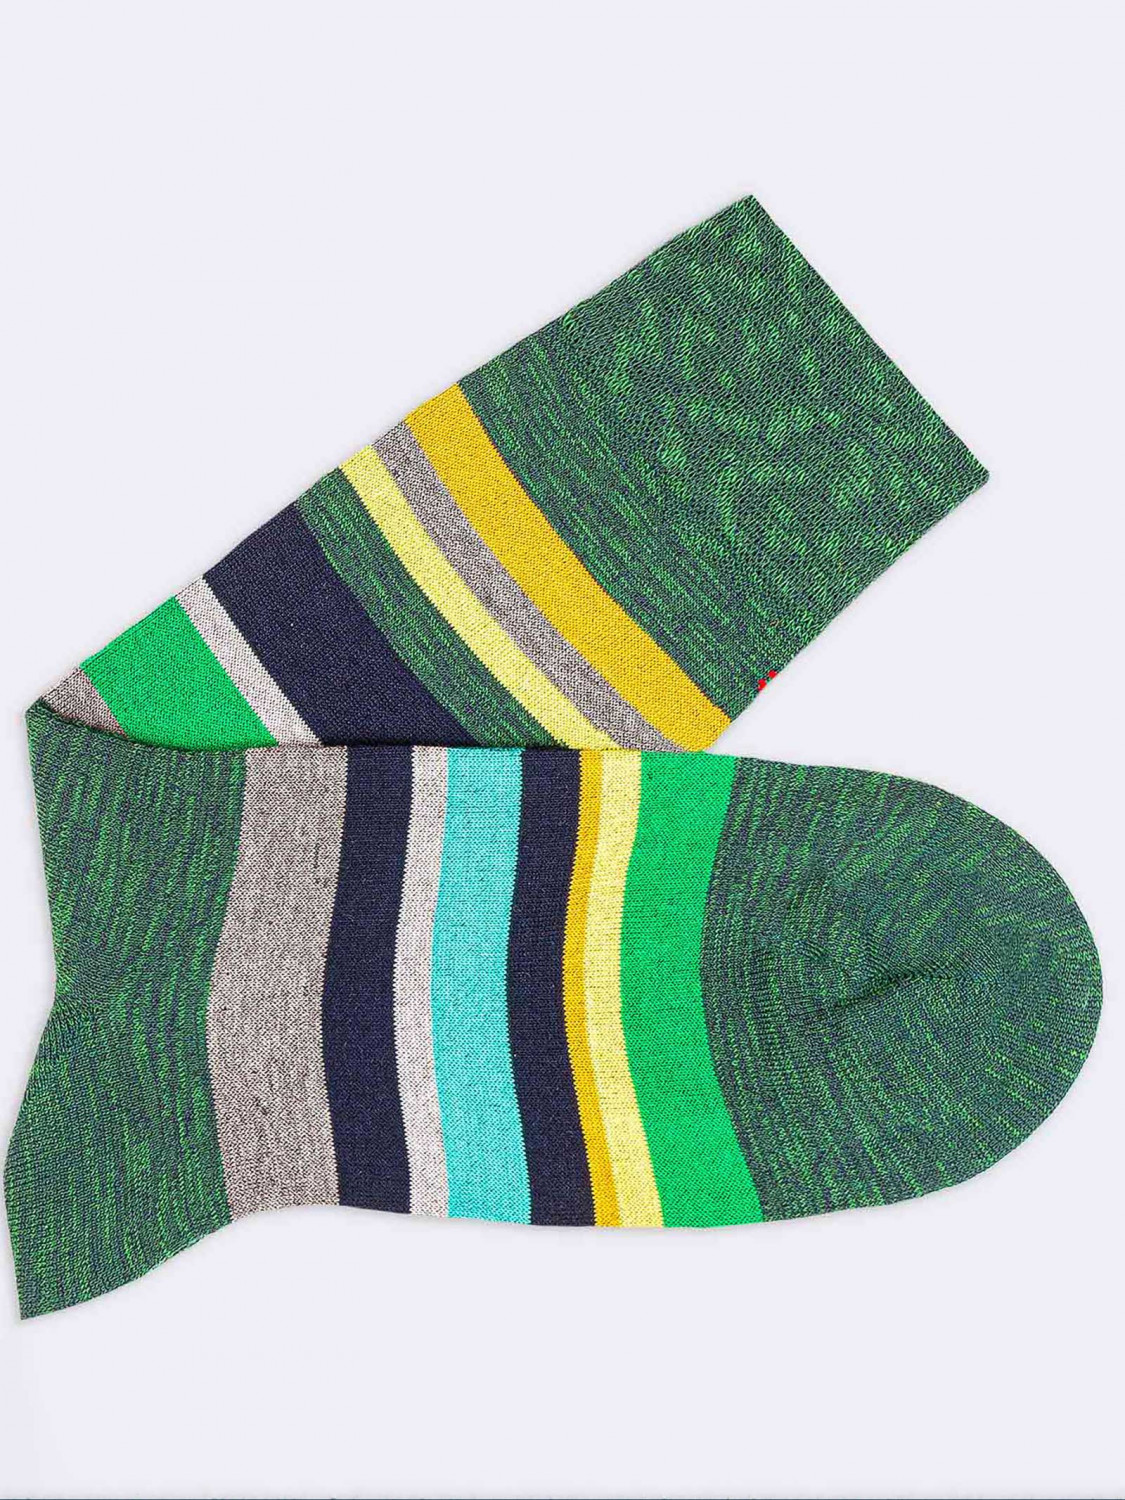 Kurze schicke Socken
Gestreifte frische Baumwolle